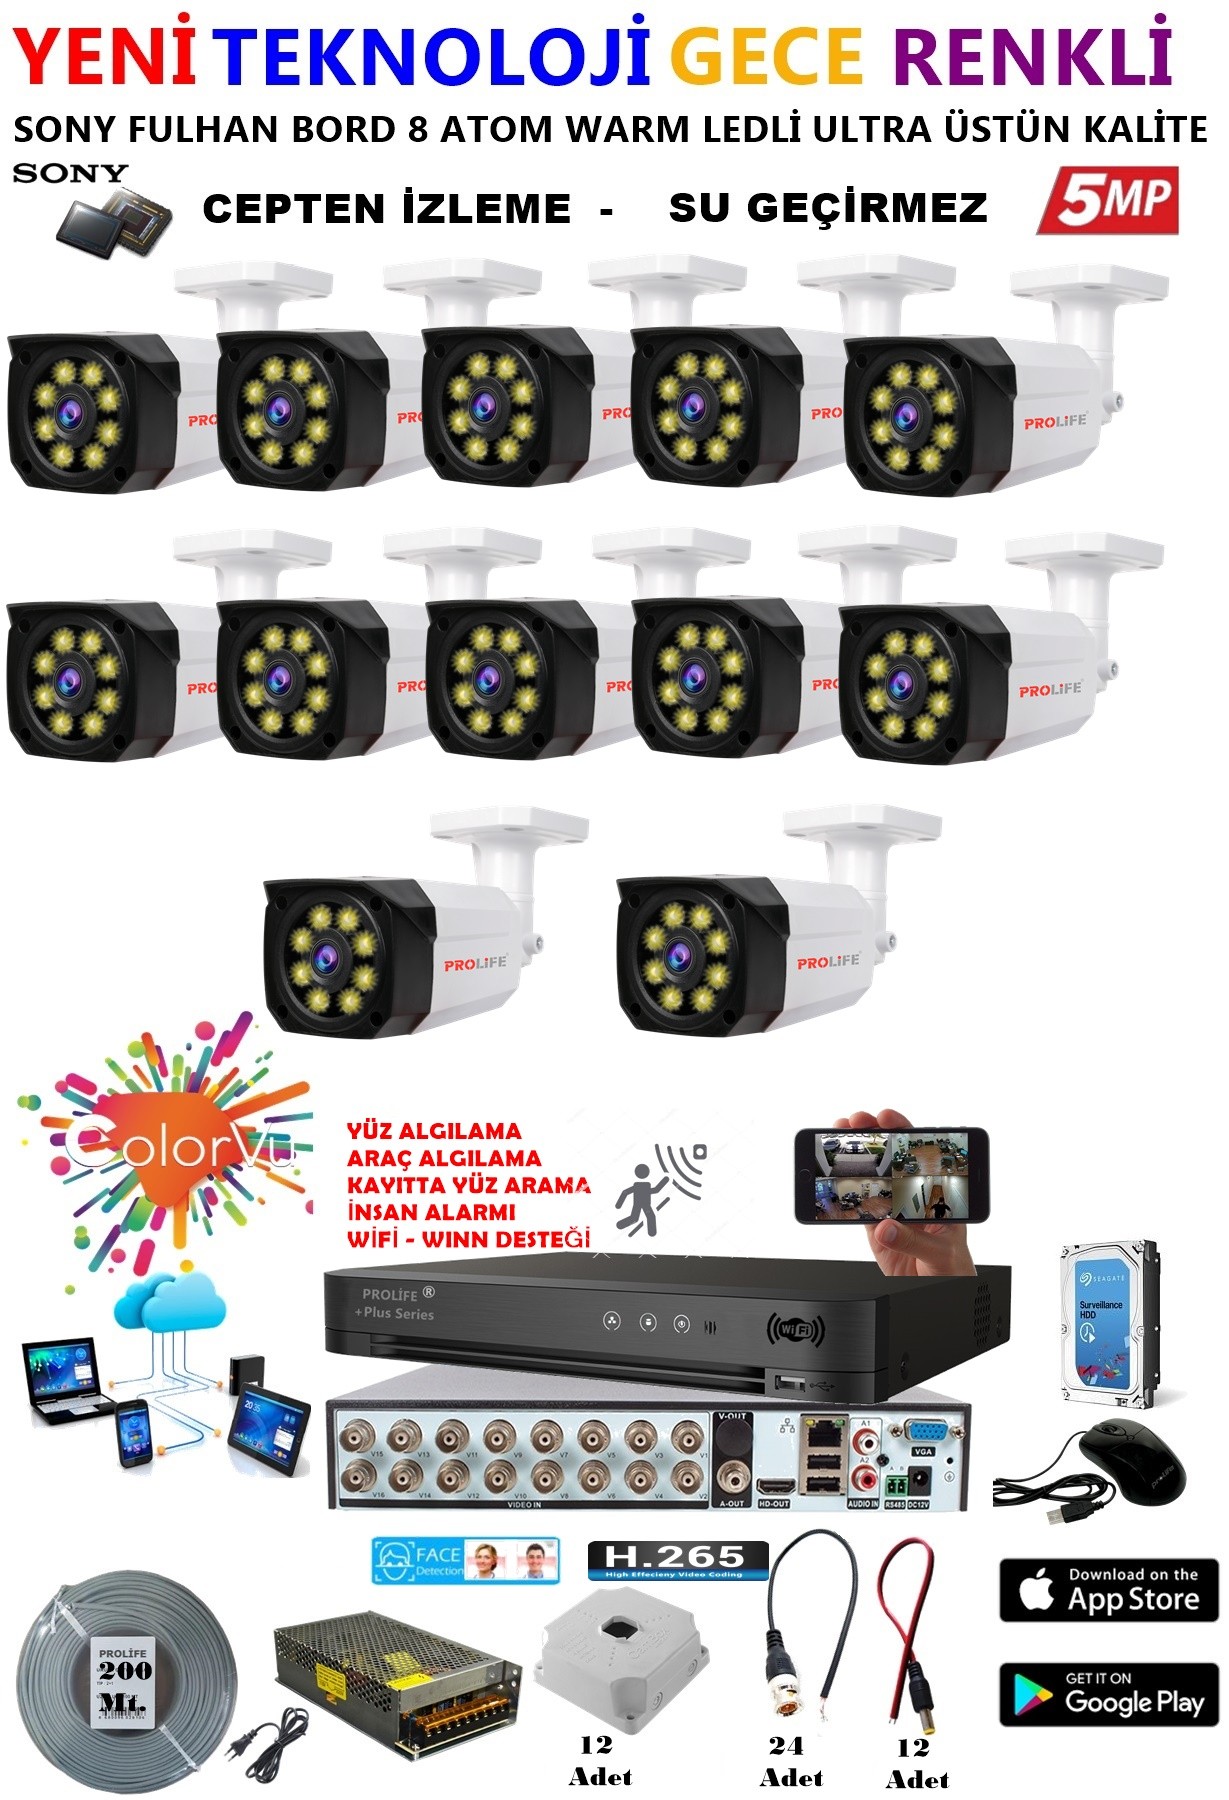 12 Kameralı 5 MP Gece Renkli Yapay Zeka Yüz ve Araç Algılamalı Olay Anı Bildirimli Kuruluma Hazır Kamera Seti